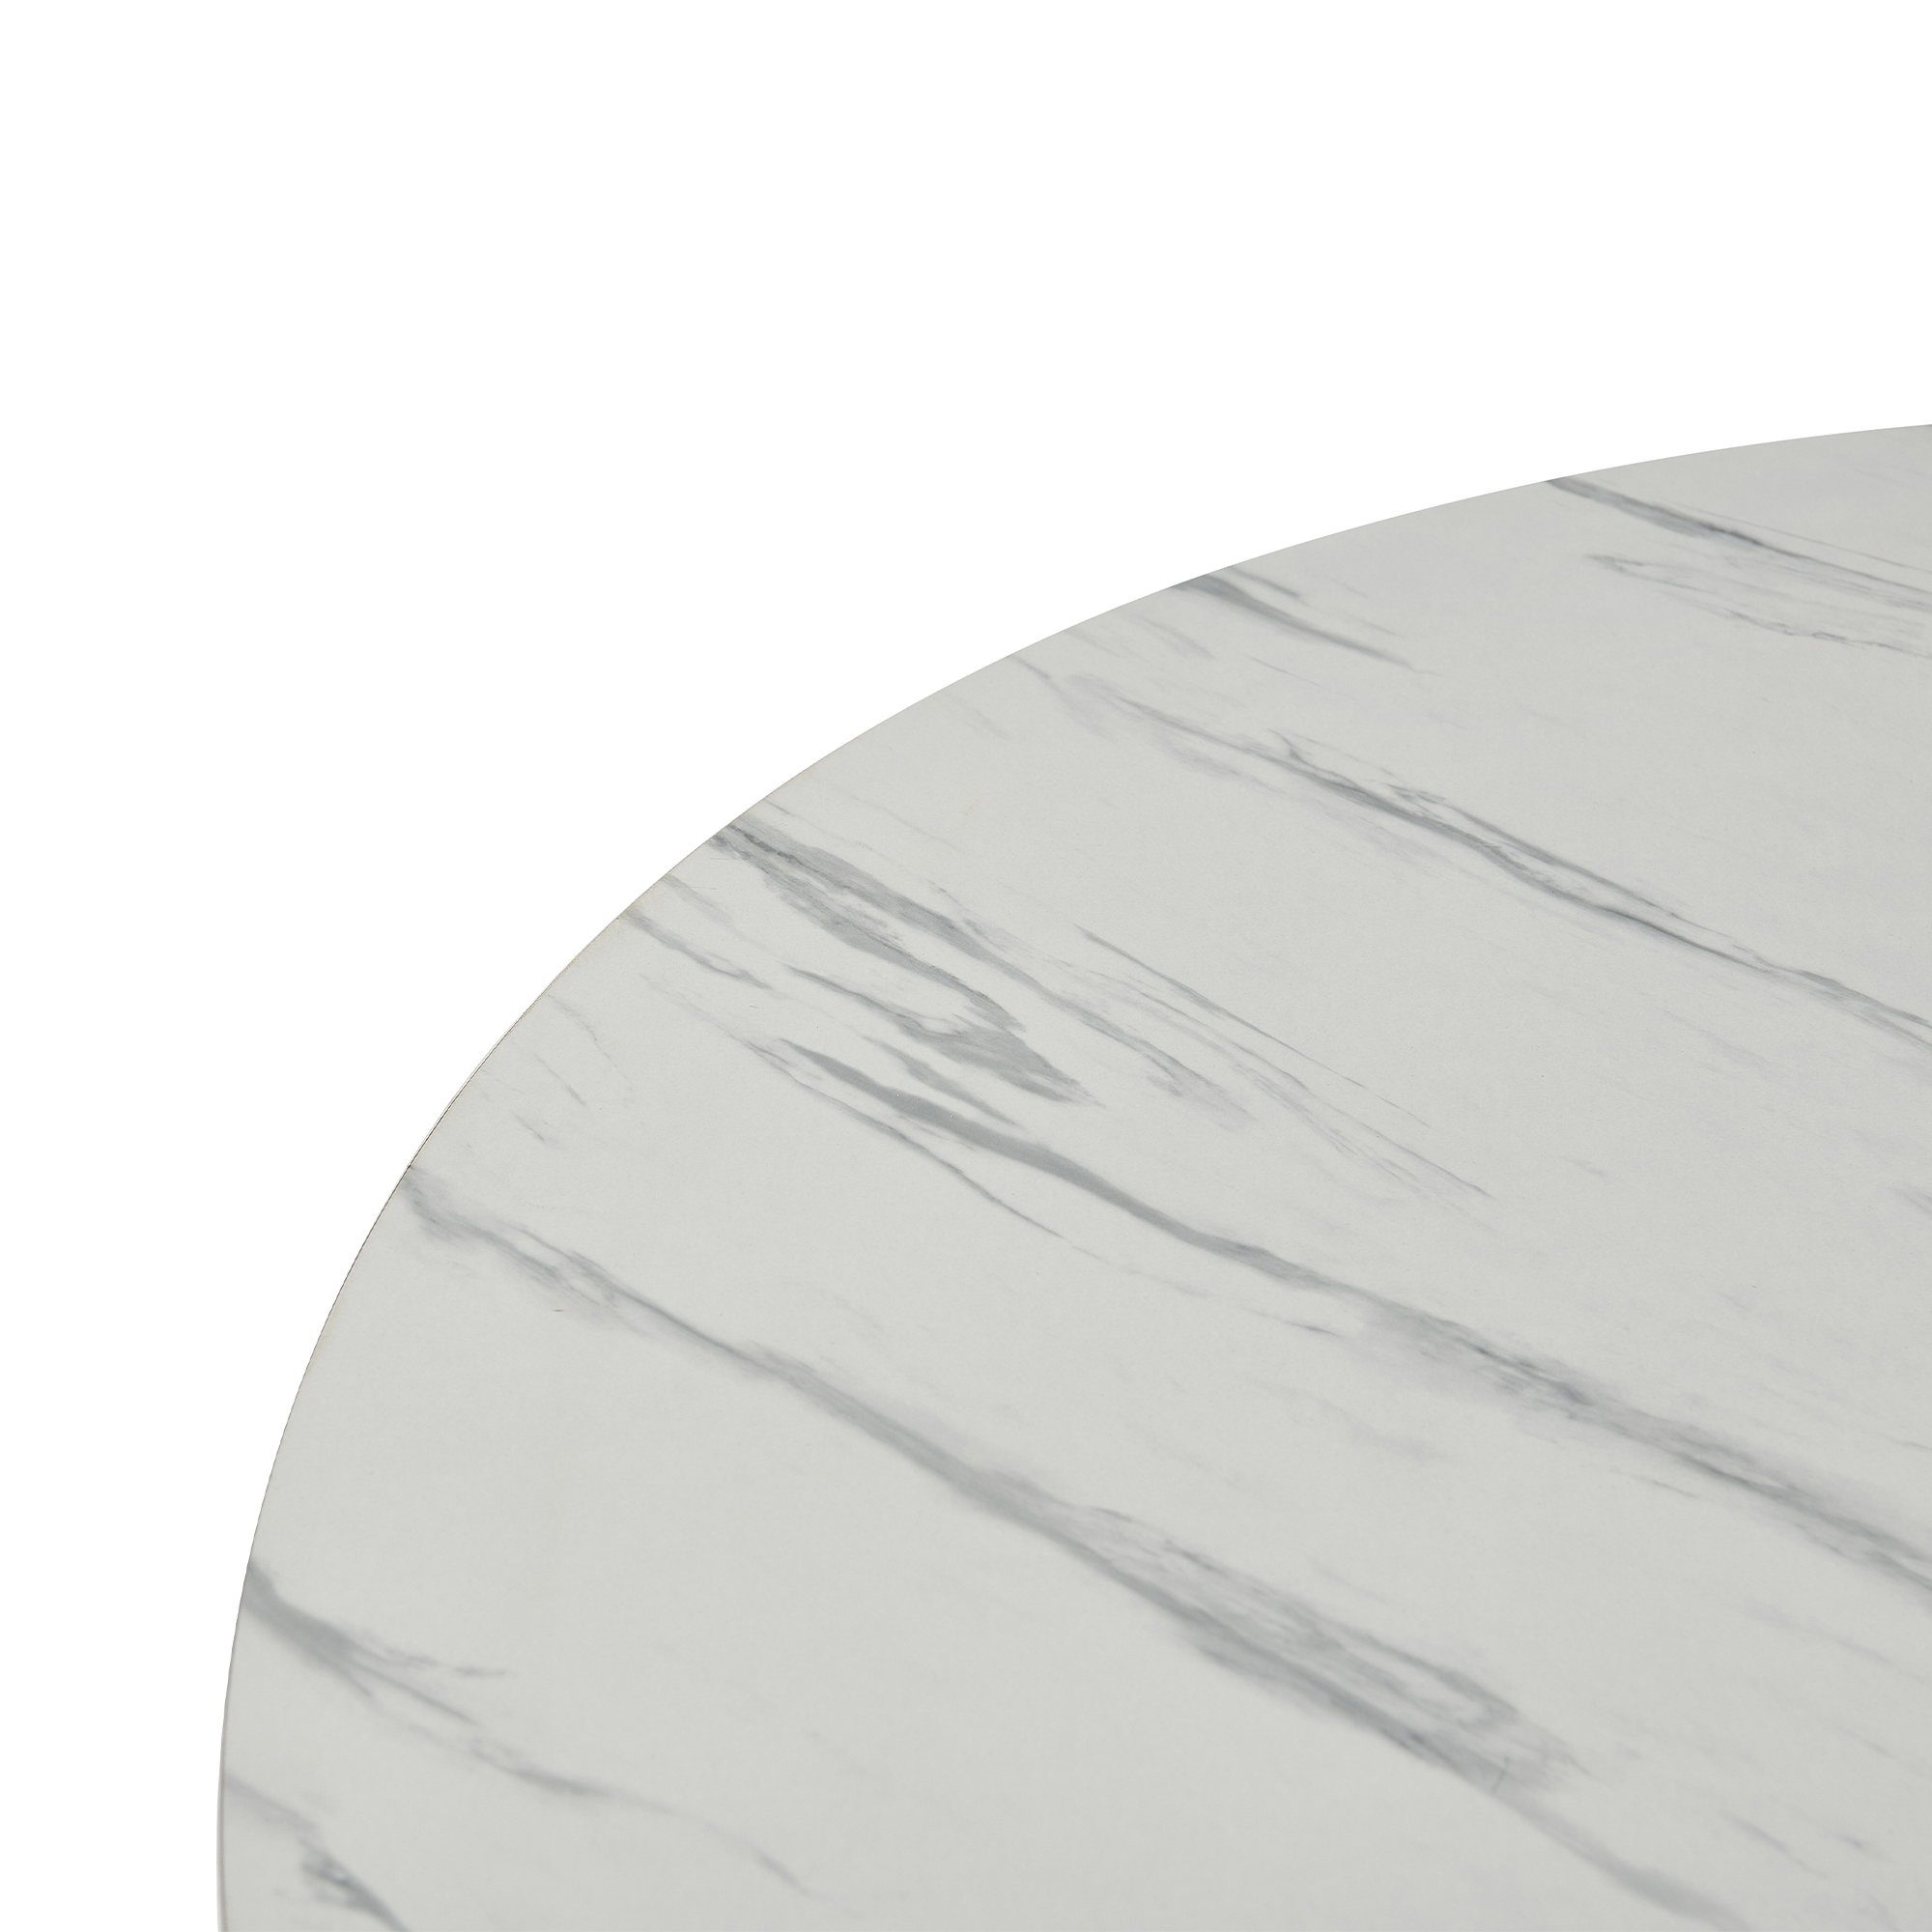 Table à manger ronde effet marbre blanc pied central design métal noir